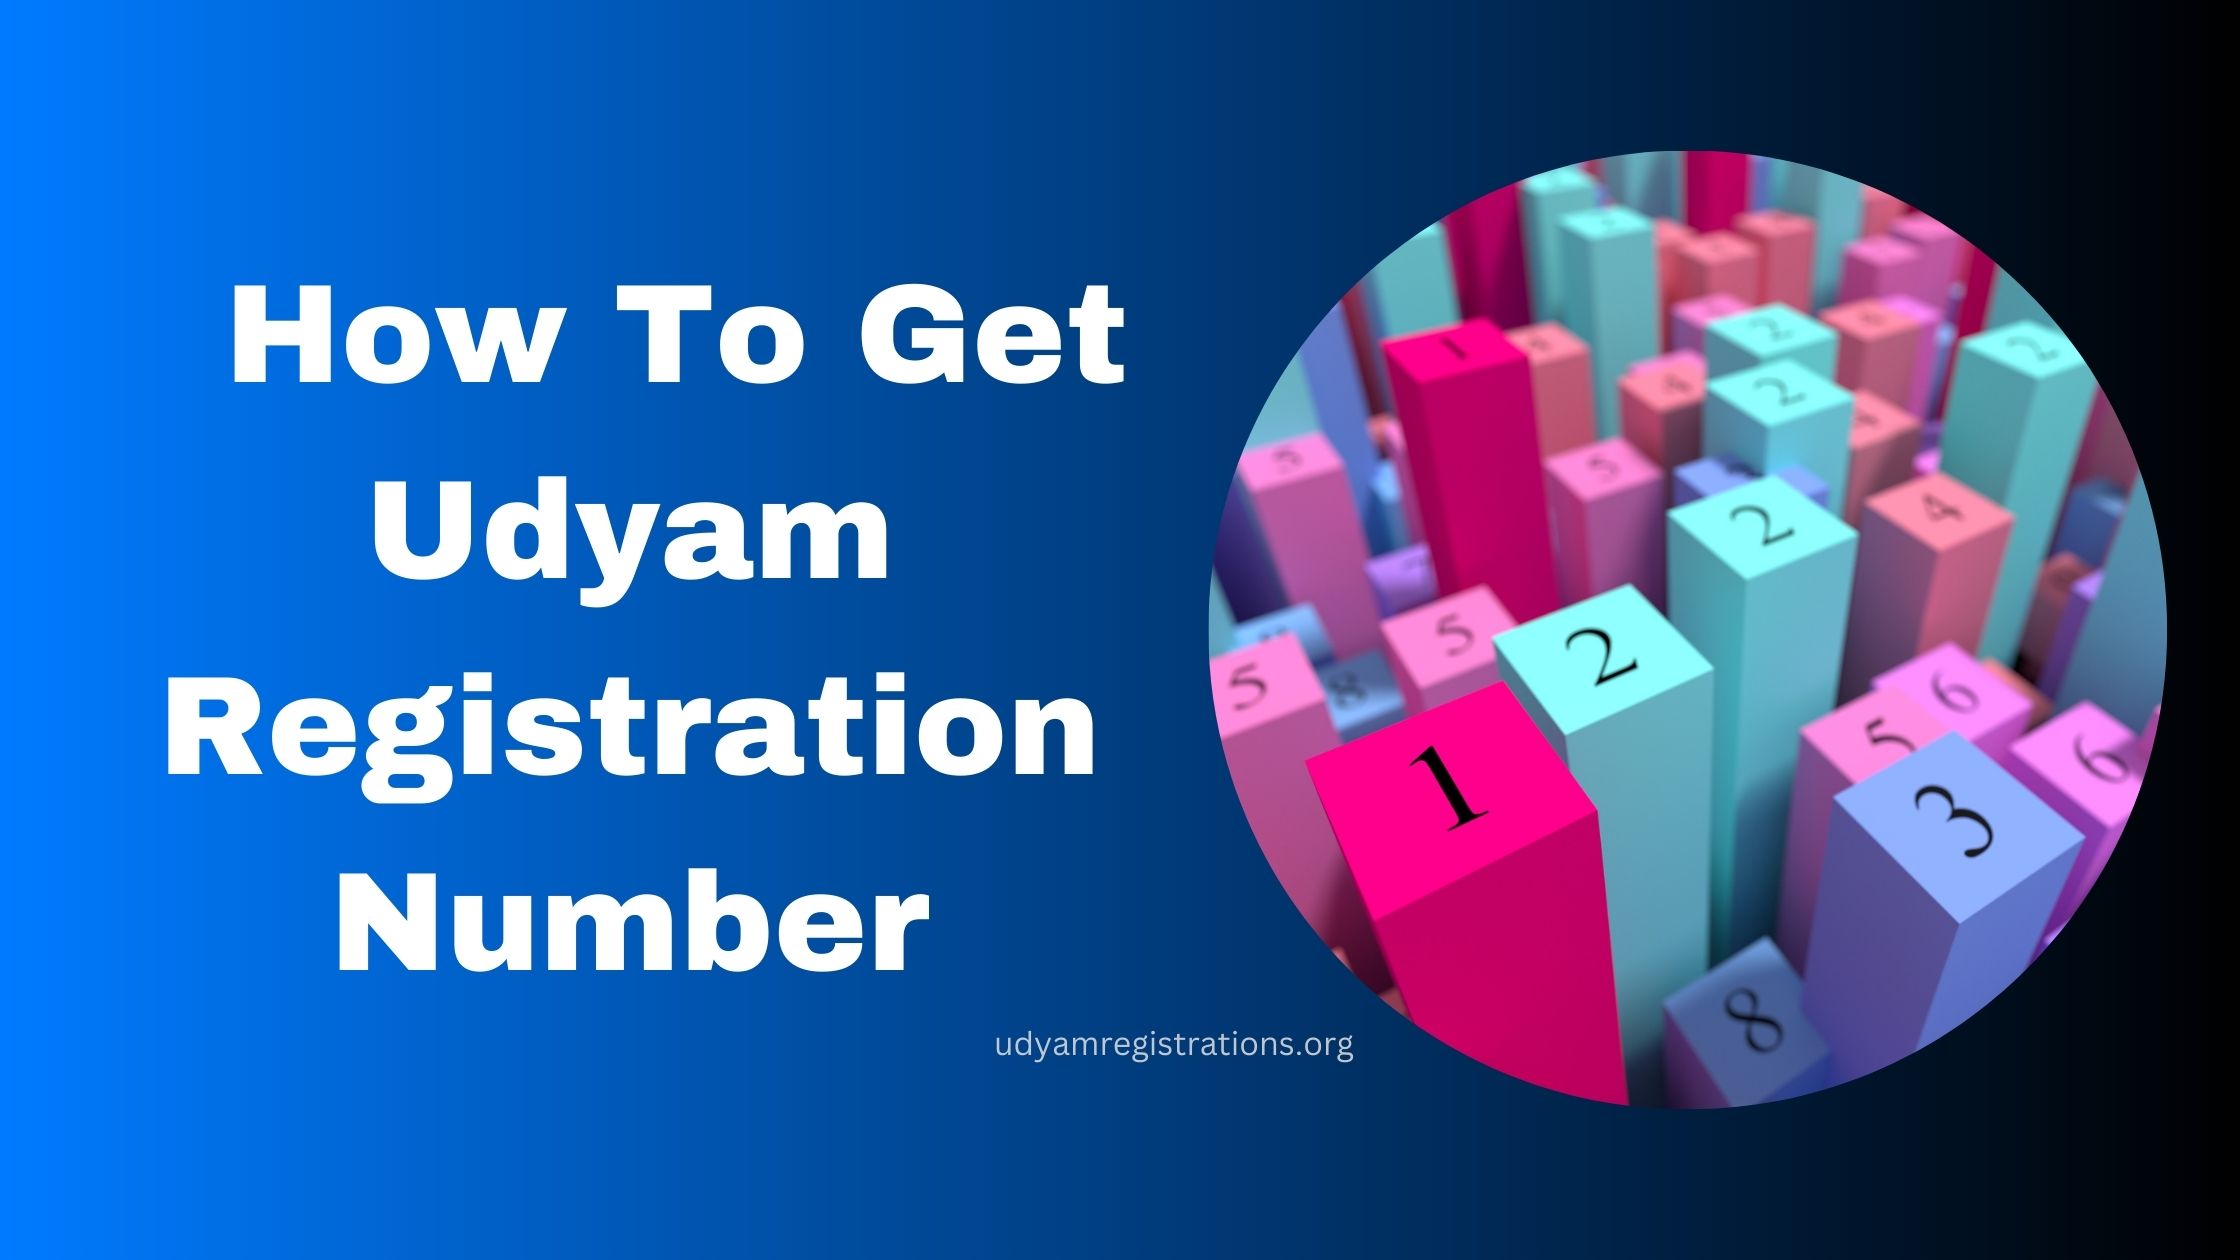 How To Get Udyam Registration Number?